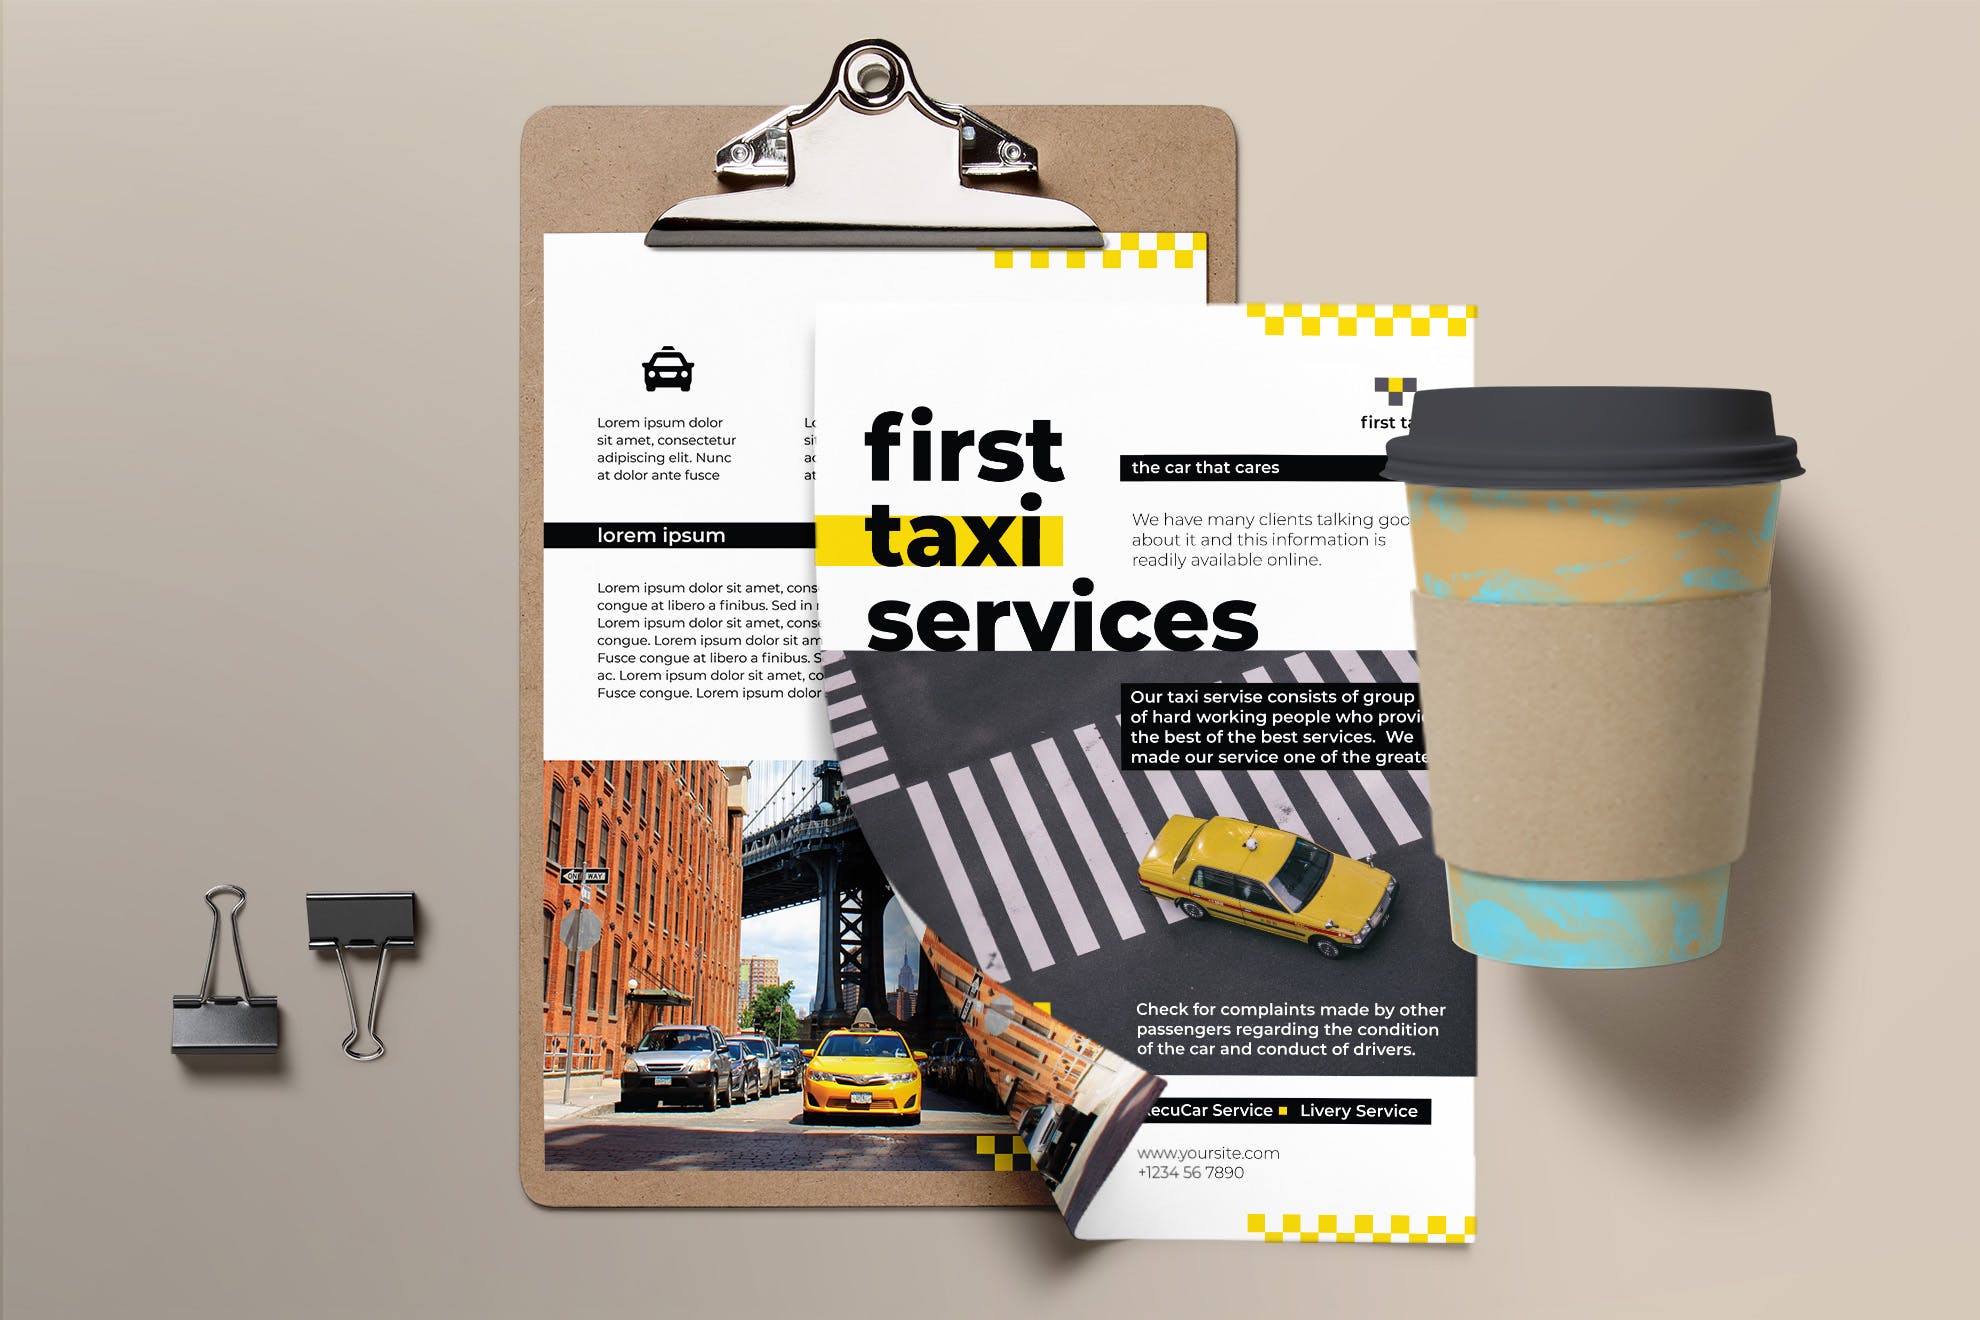 出租车/网约车服务公司宣传单设计模板 Taxi Services Flyer插图(2)